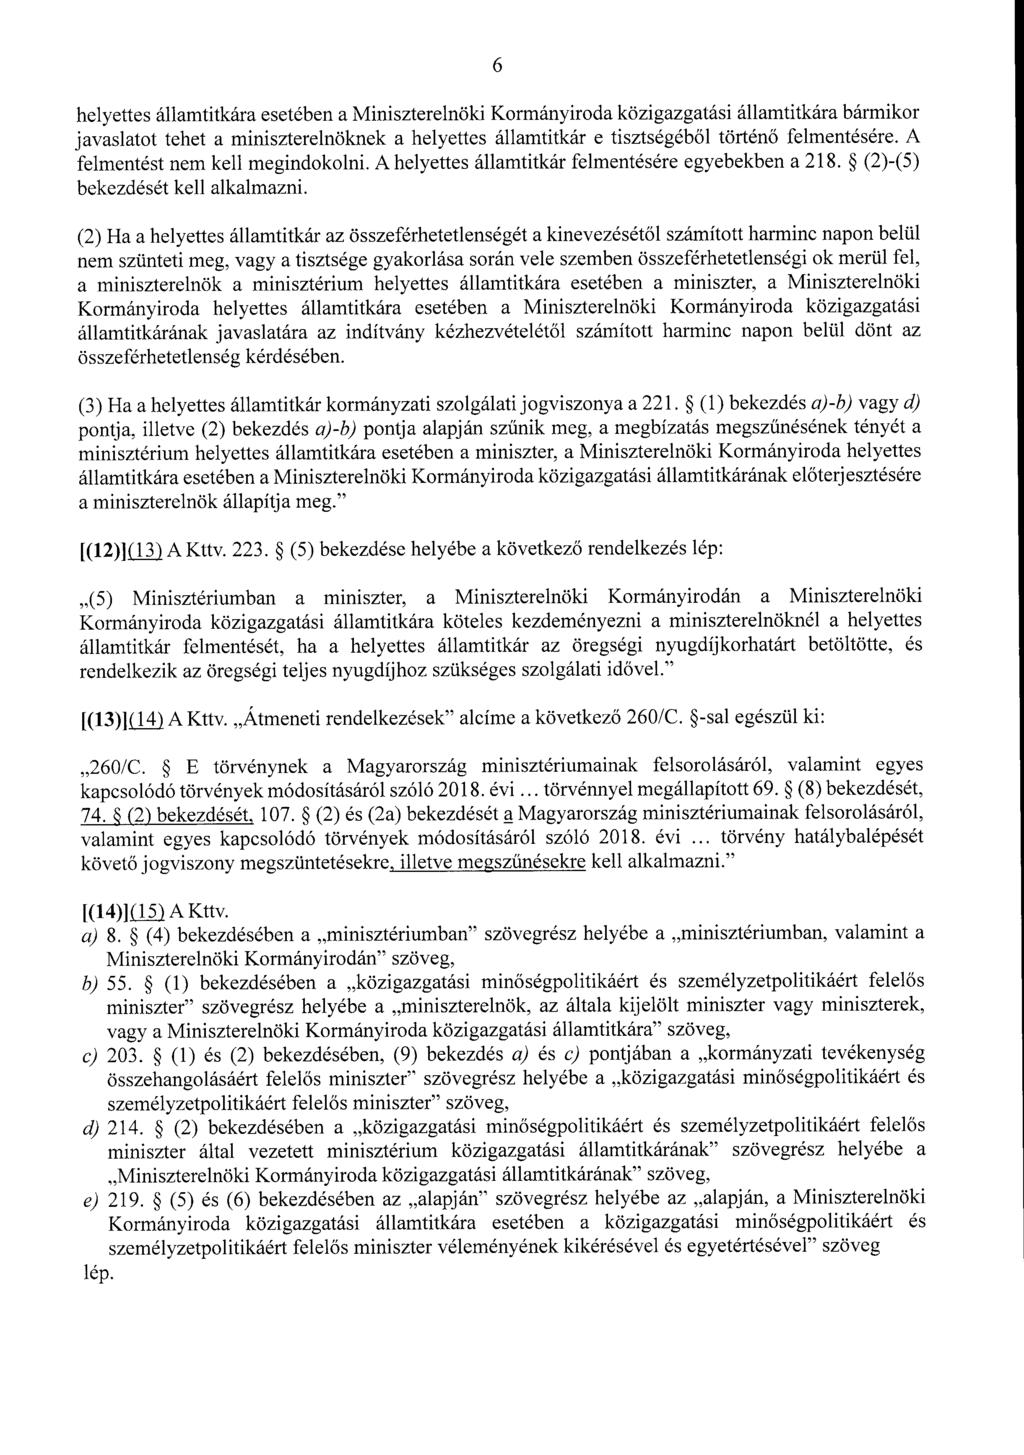 6 helyettes államtitkára esetében a Miniszterelnöki Kormányiroda közigazgatási államtitkára bármiko r javaslatot tehet a miniszterelnöknek a helyettes államtitkár e tisztségéb ől történő felmentésére.